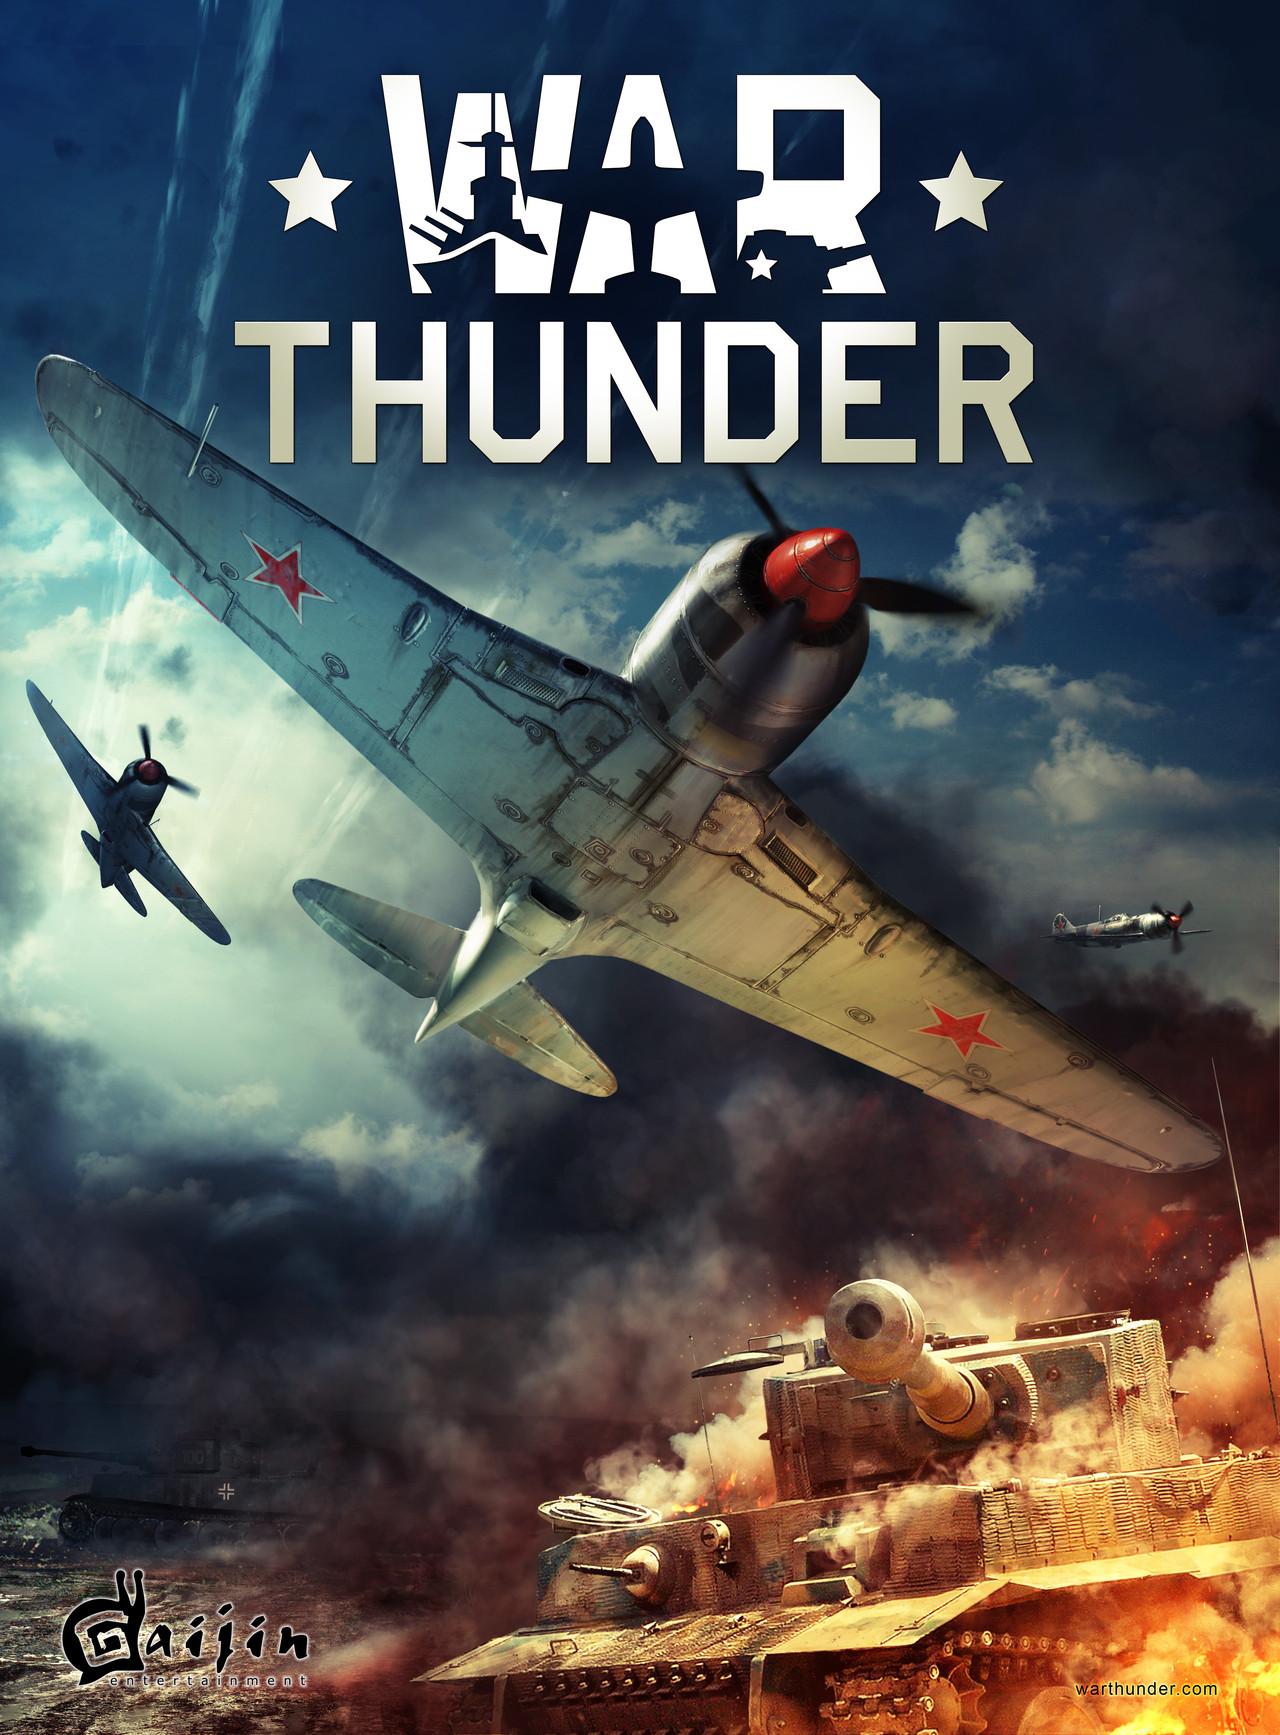 War Thunder sur PC - jeuxvideo.com - 1280 x 1735 jpeg 1709kB